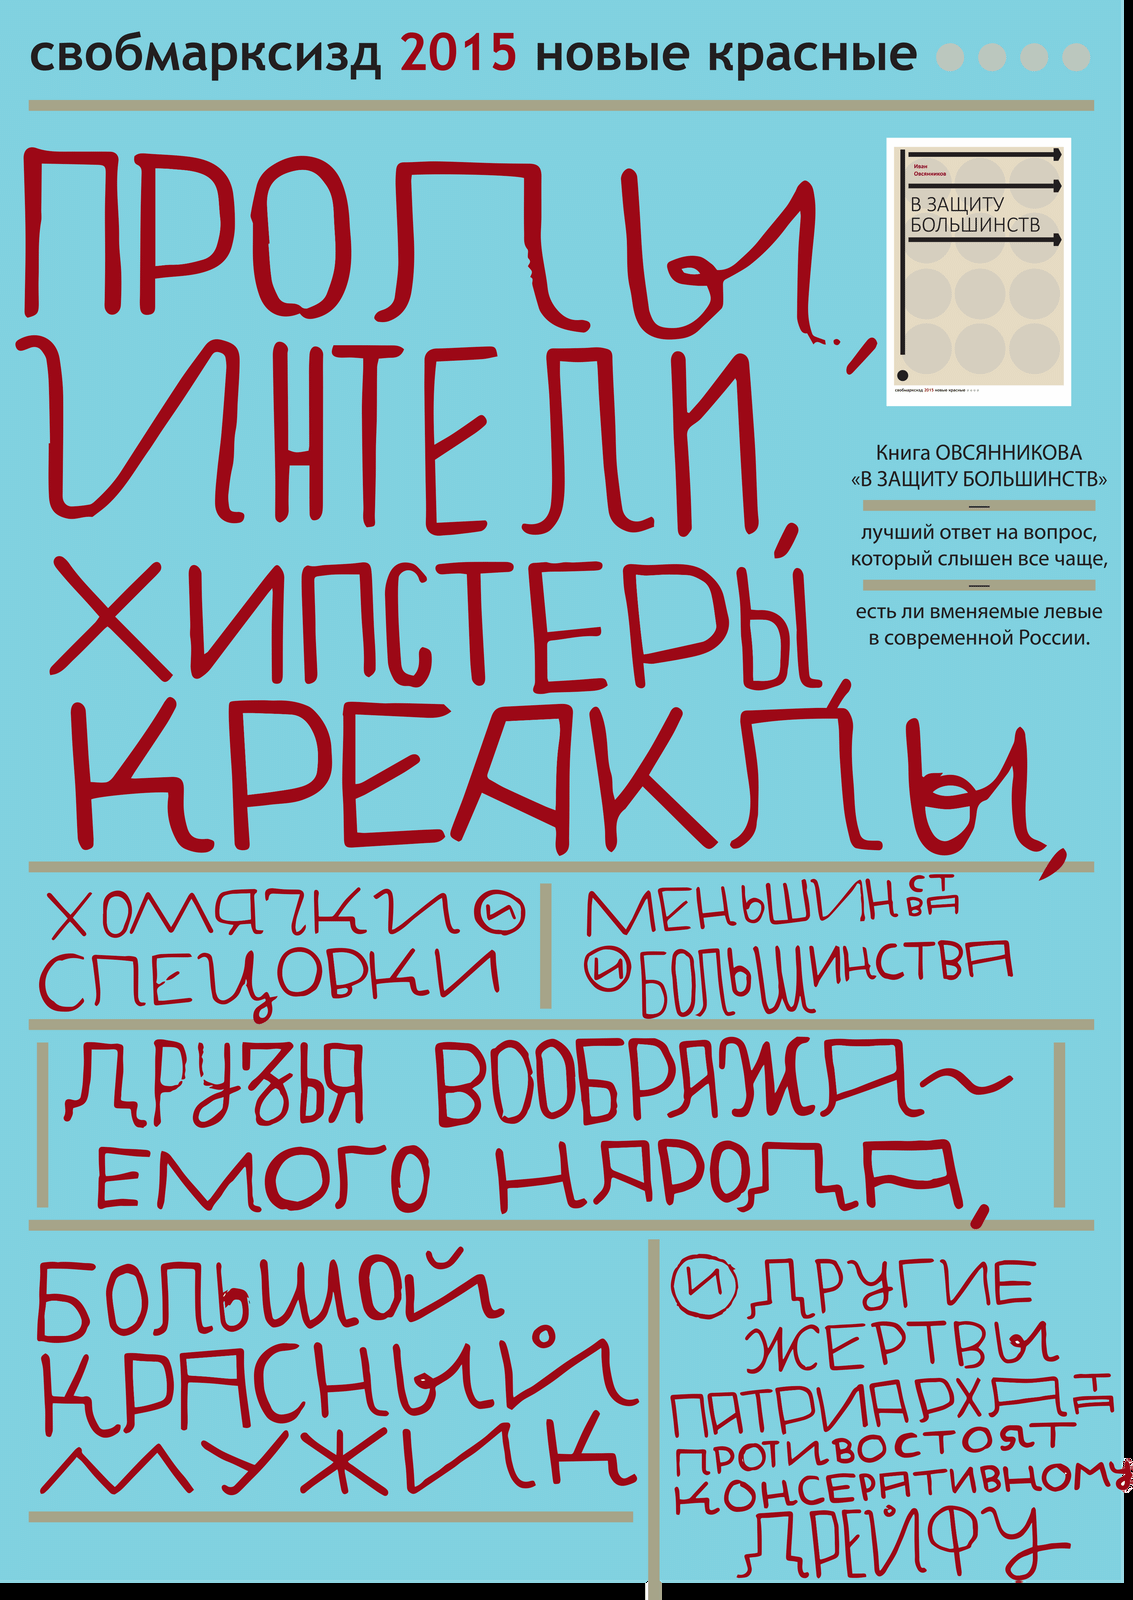 обложка и&nbsp;постер&nbsp;— Николай Олейников